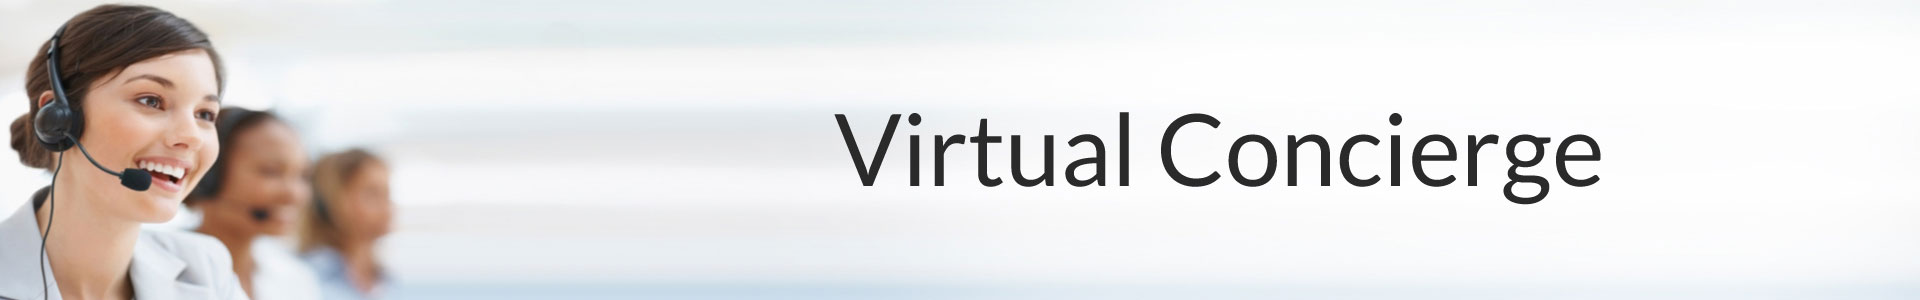 Virtual Conciege Services